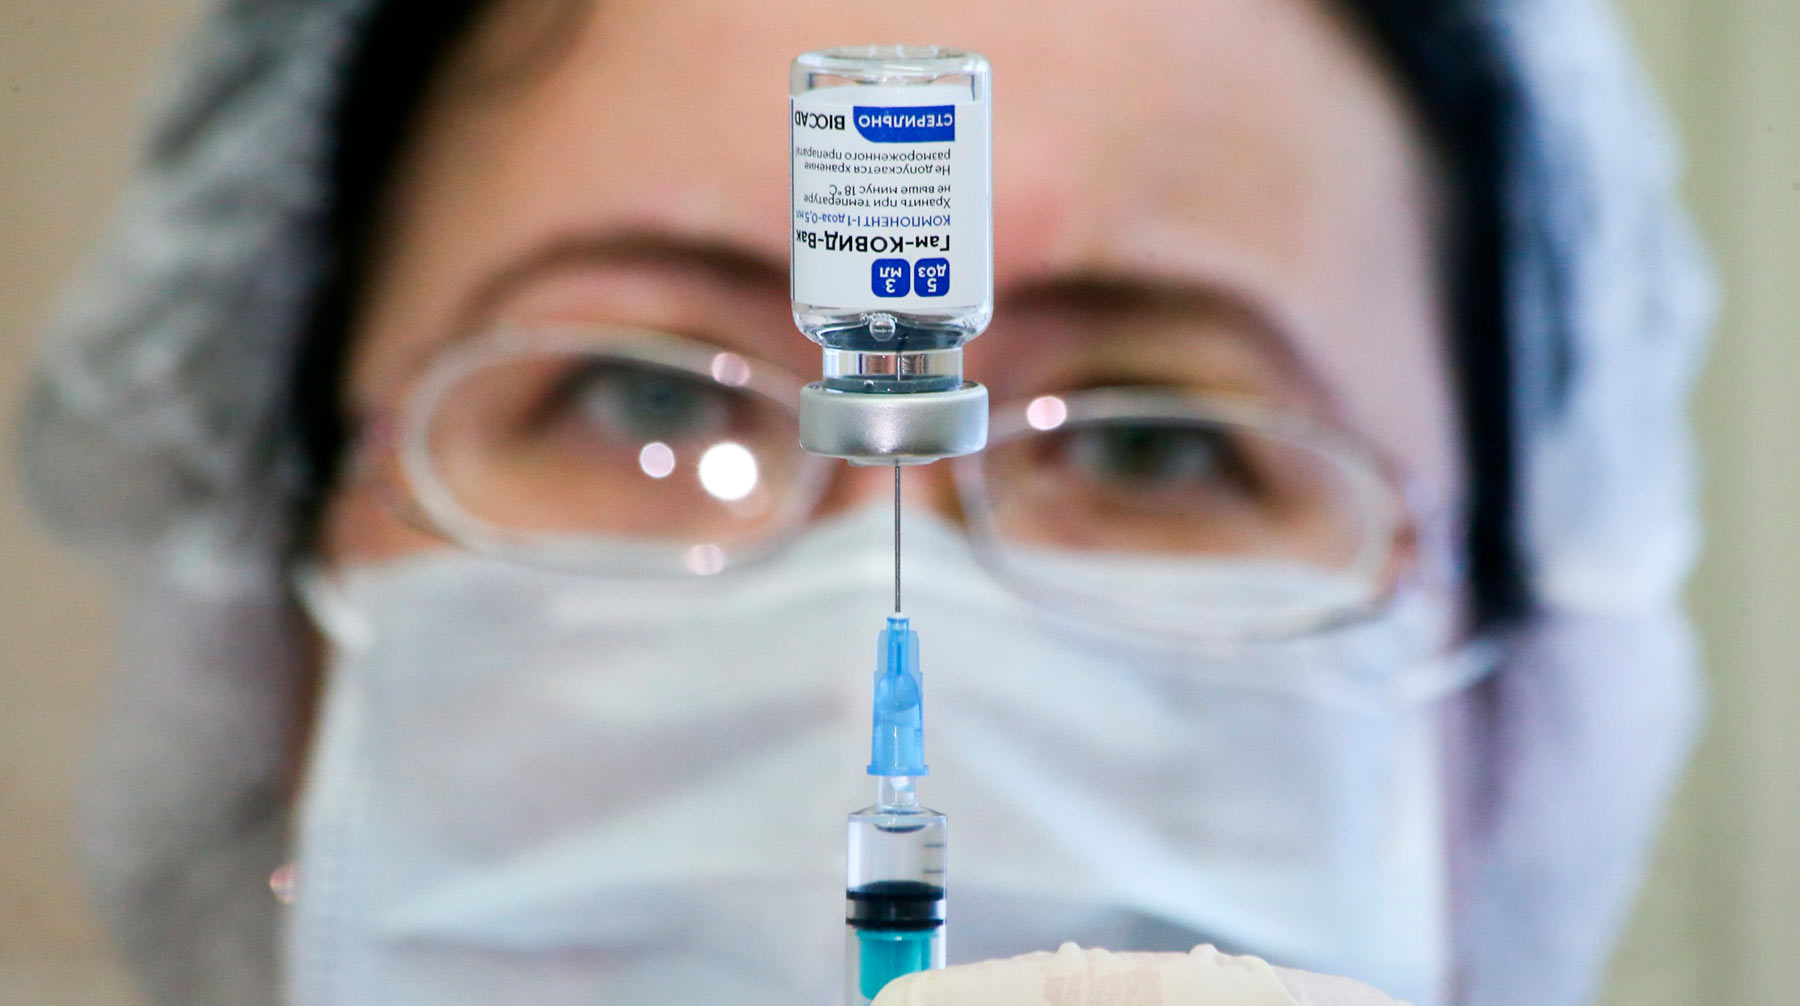 В среднем за рубежом к прививке относятся более положительно, чем в РФ Фото: © АГН Москва / Сергей Ведяшкин